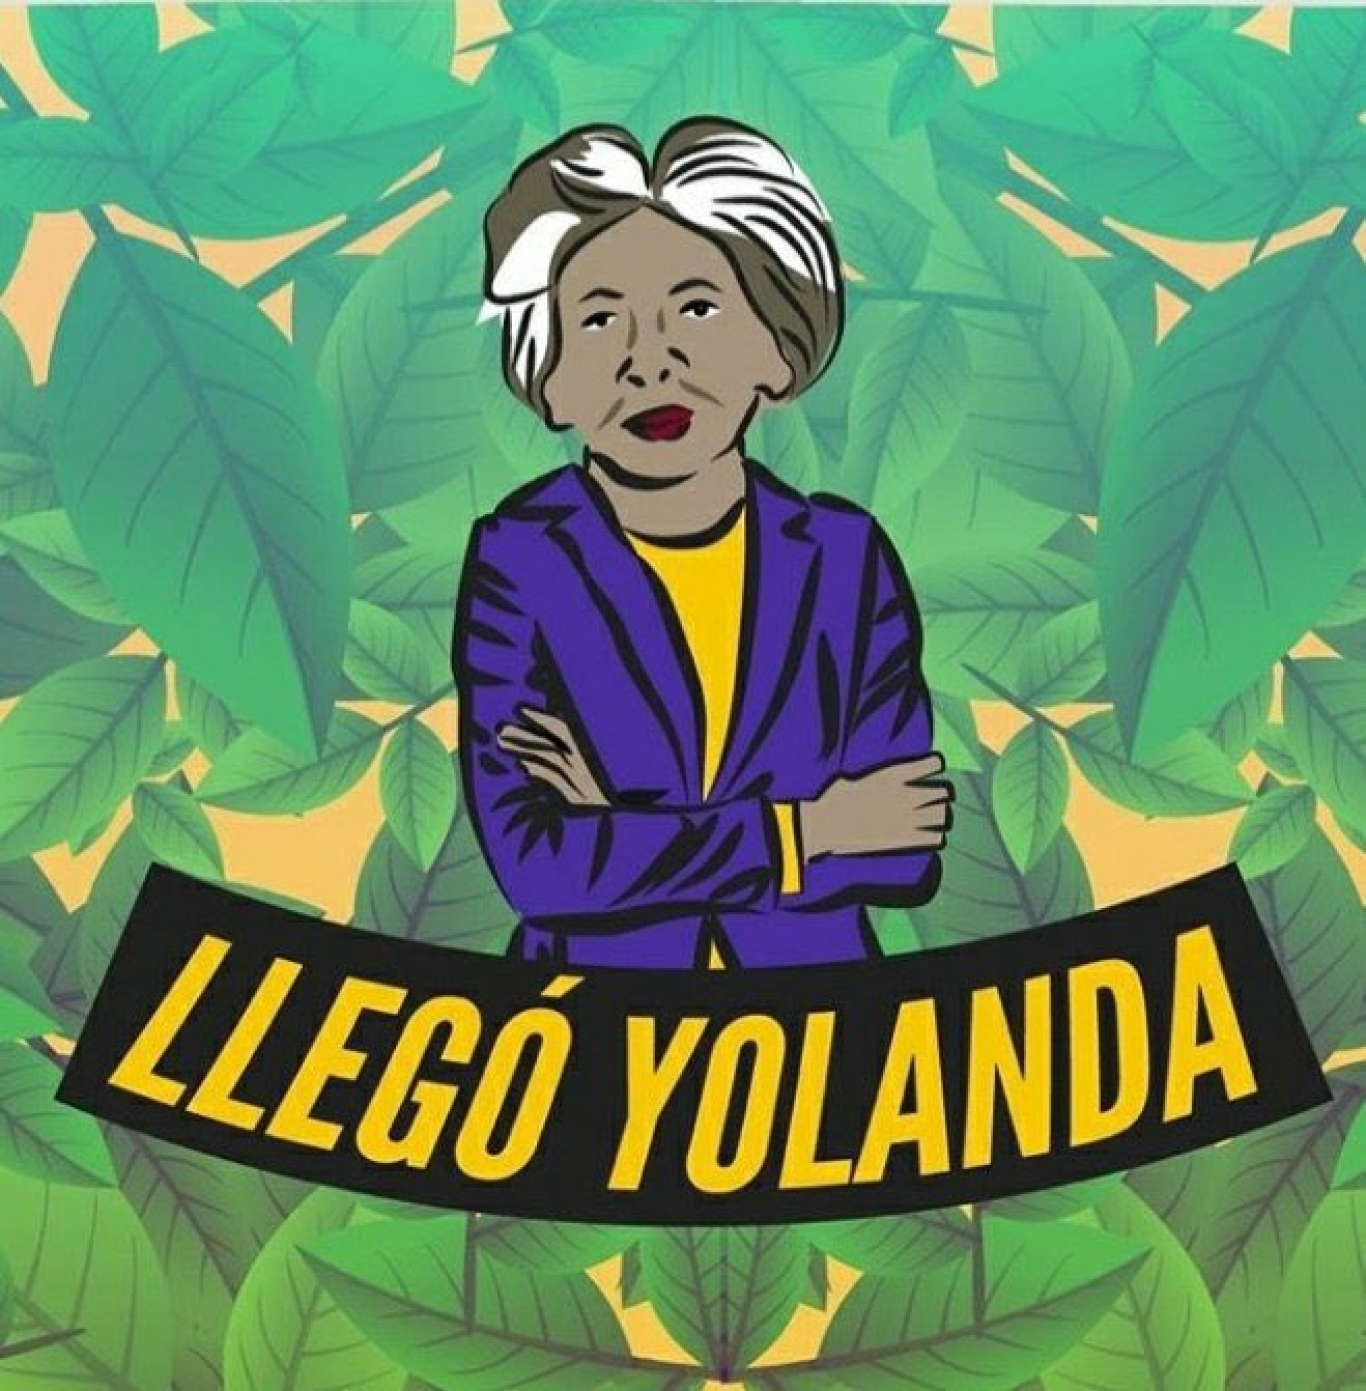 "Yolanda era una mujer maravillosa, de vocación militante, apasionada por lo originario" Homero Bibiloni